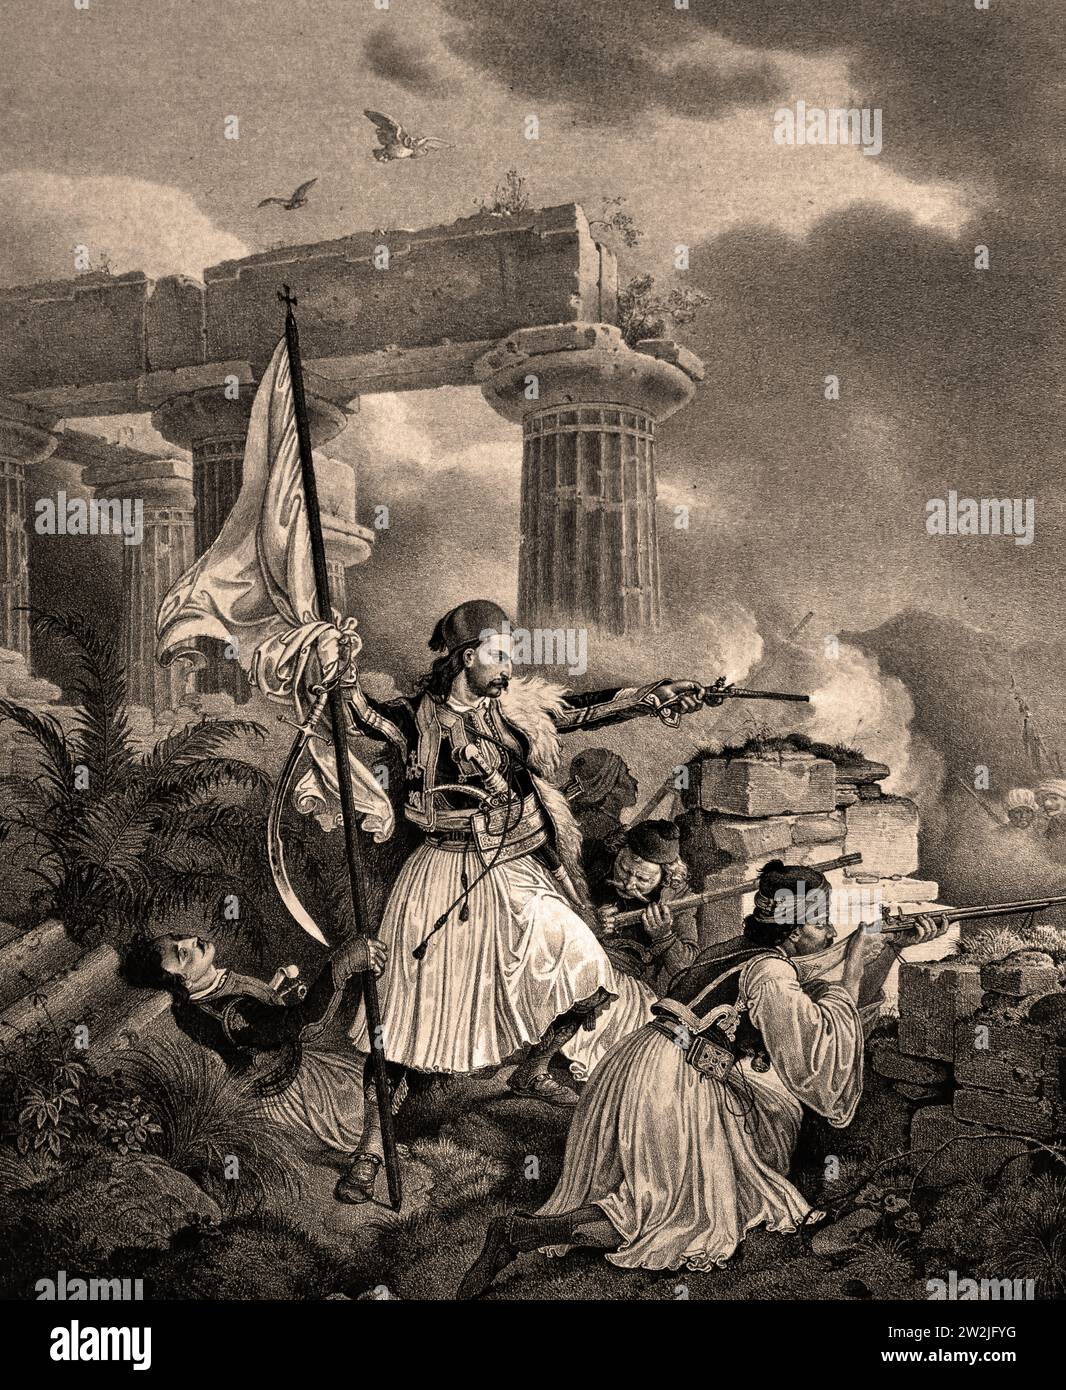 Ein Häuptling und seine Pallicares in der Schlacht 1829 Lithographie 19.-20. Jahrhundert, Nationalgalerie, Athen, Griechenland. Stockfoto